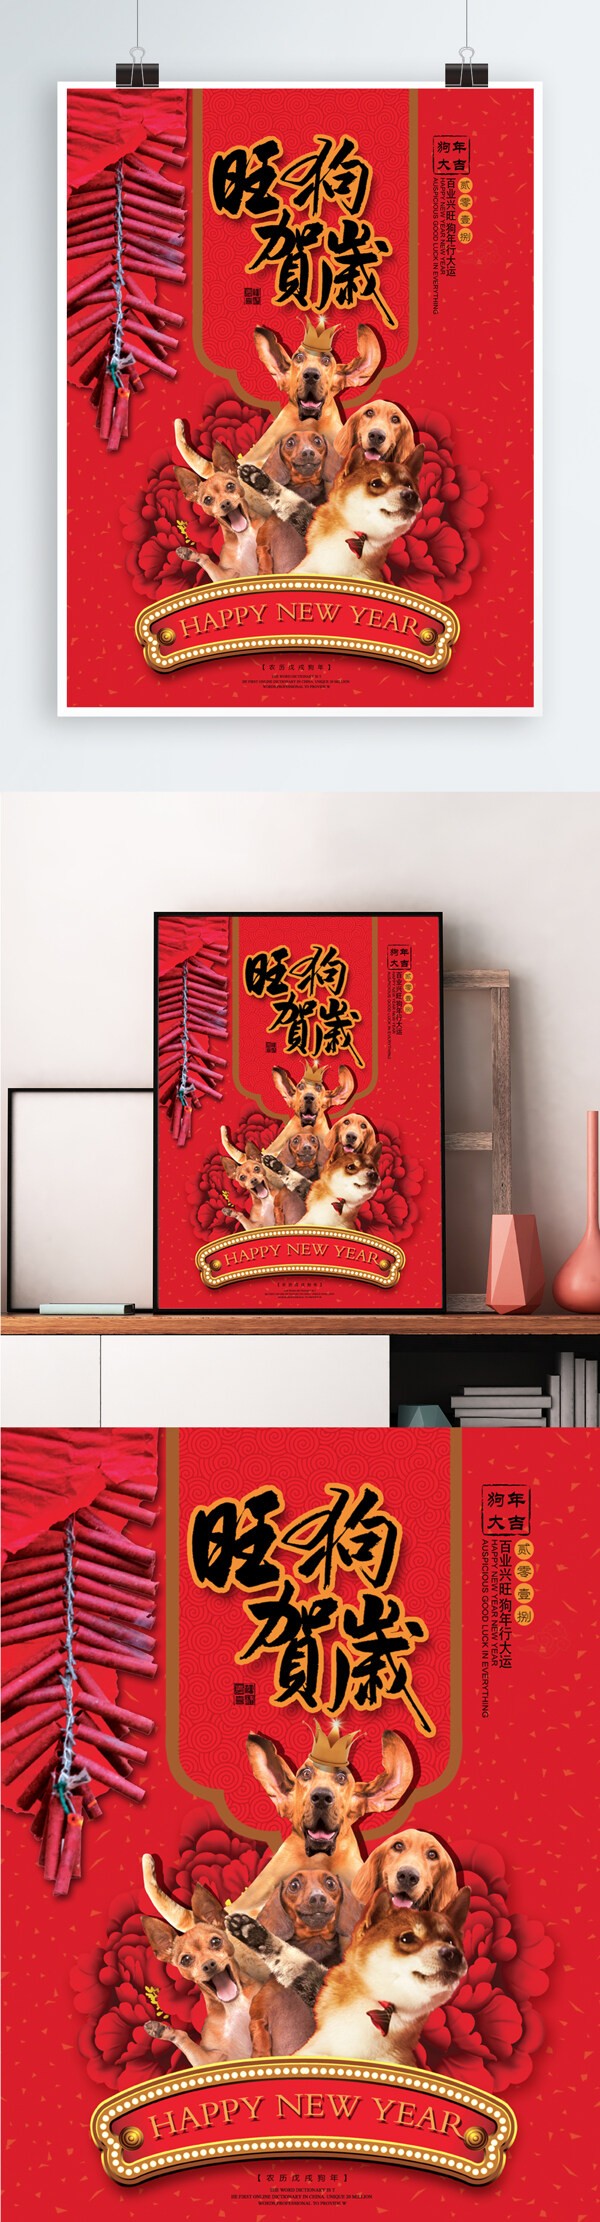 原创2018年狗年商场促销海报设计